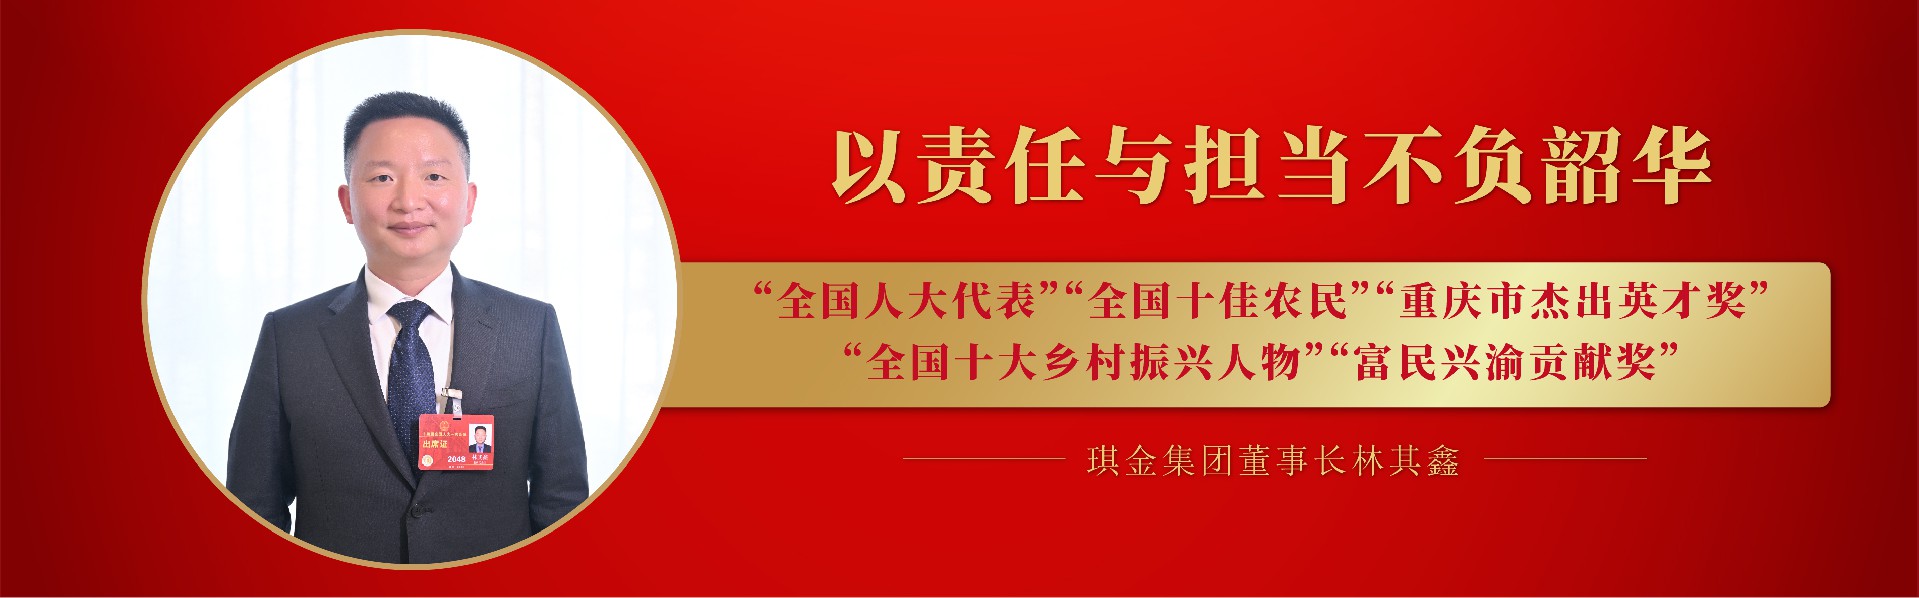 亚搏娱乐电子(中国)集团有限公司董事长林其鑫获得多项荣誉